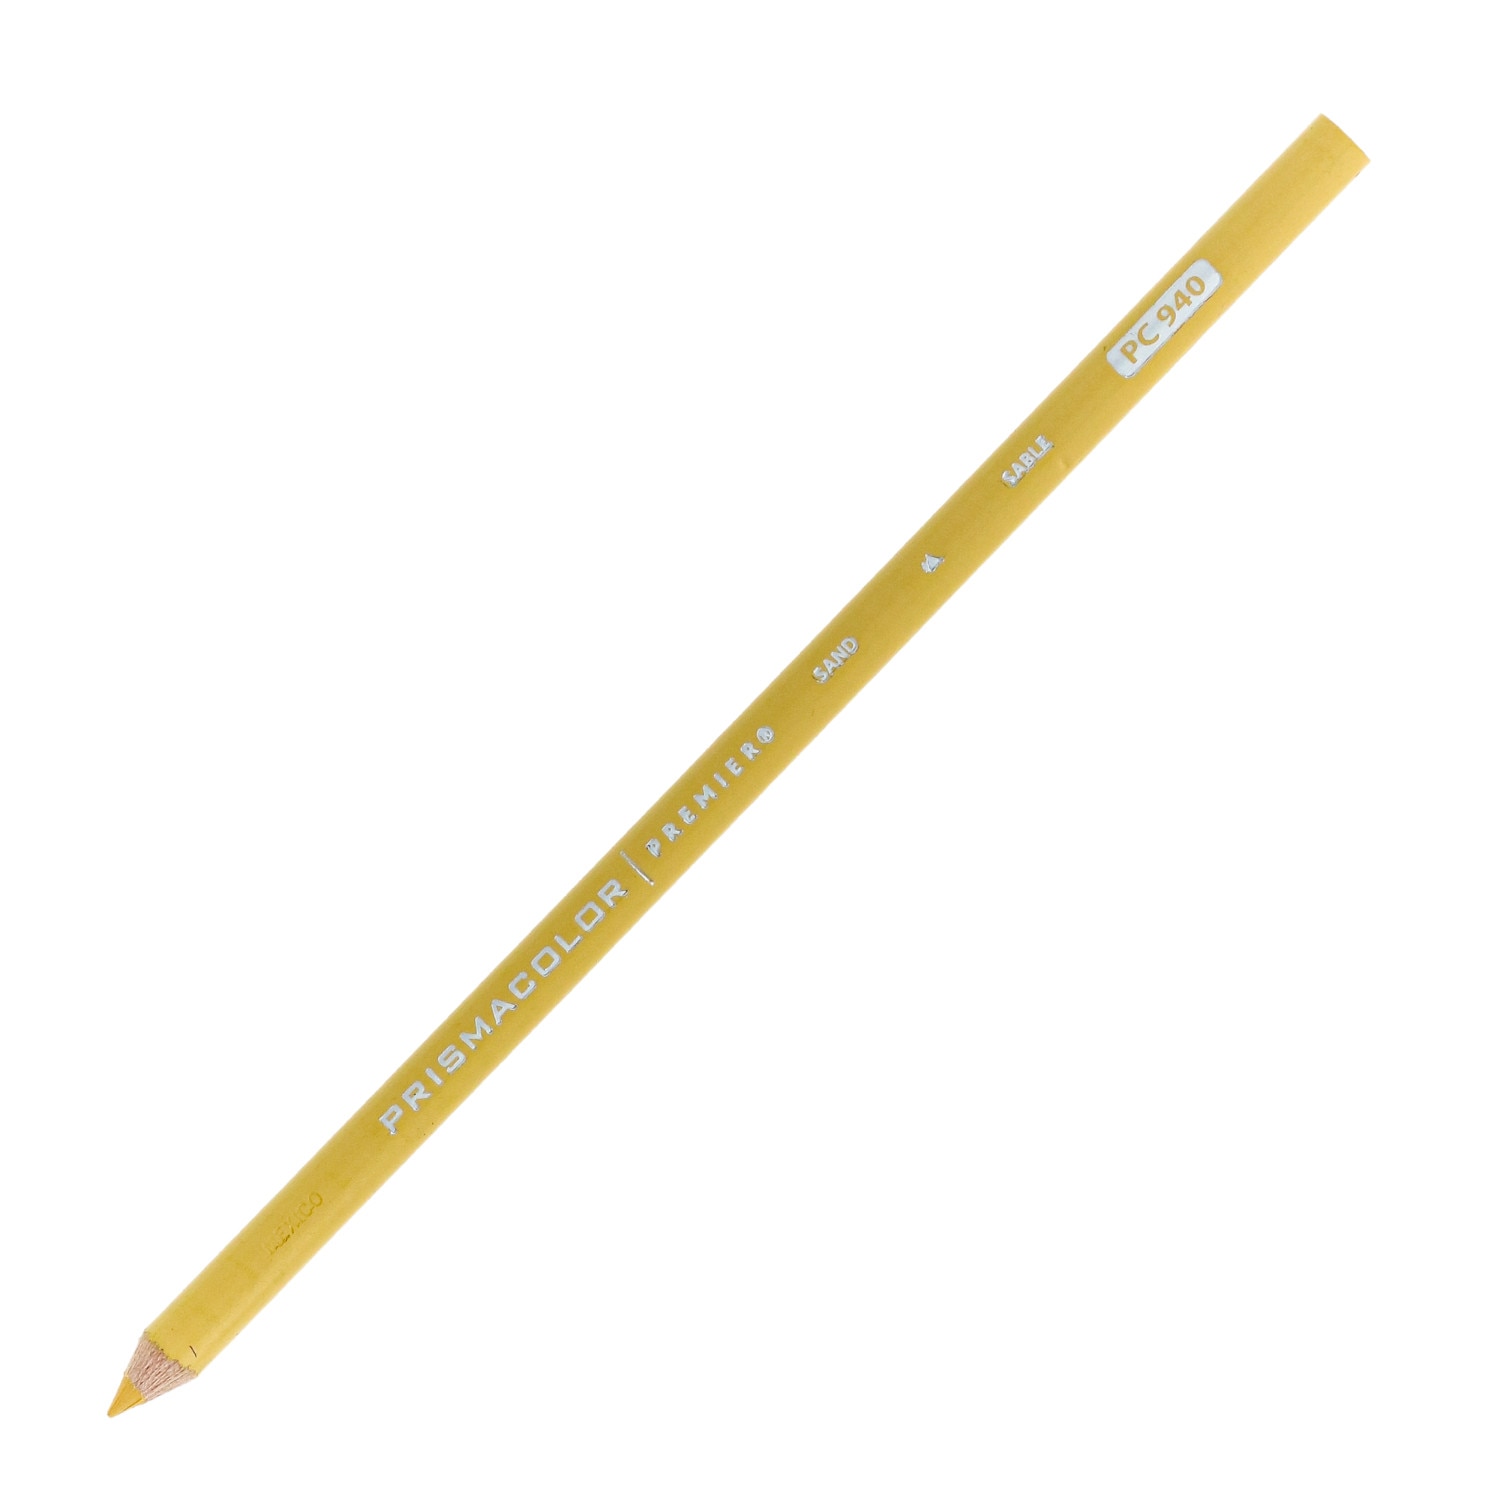 Prismacolor Premier Thick Core Colored Pencil